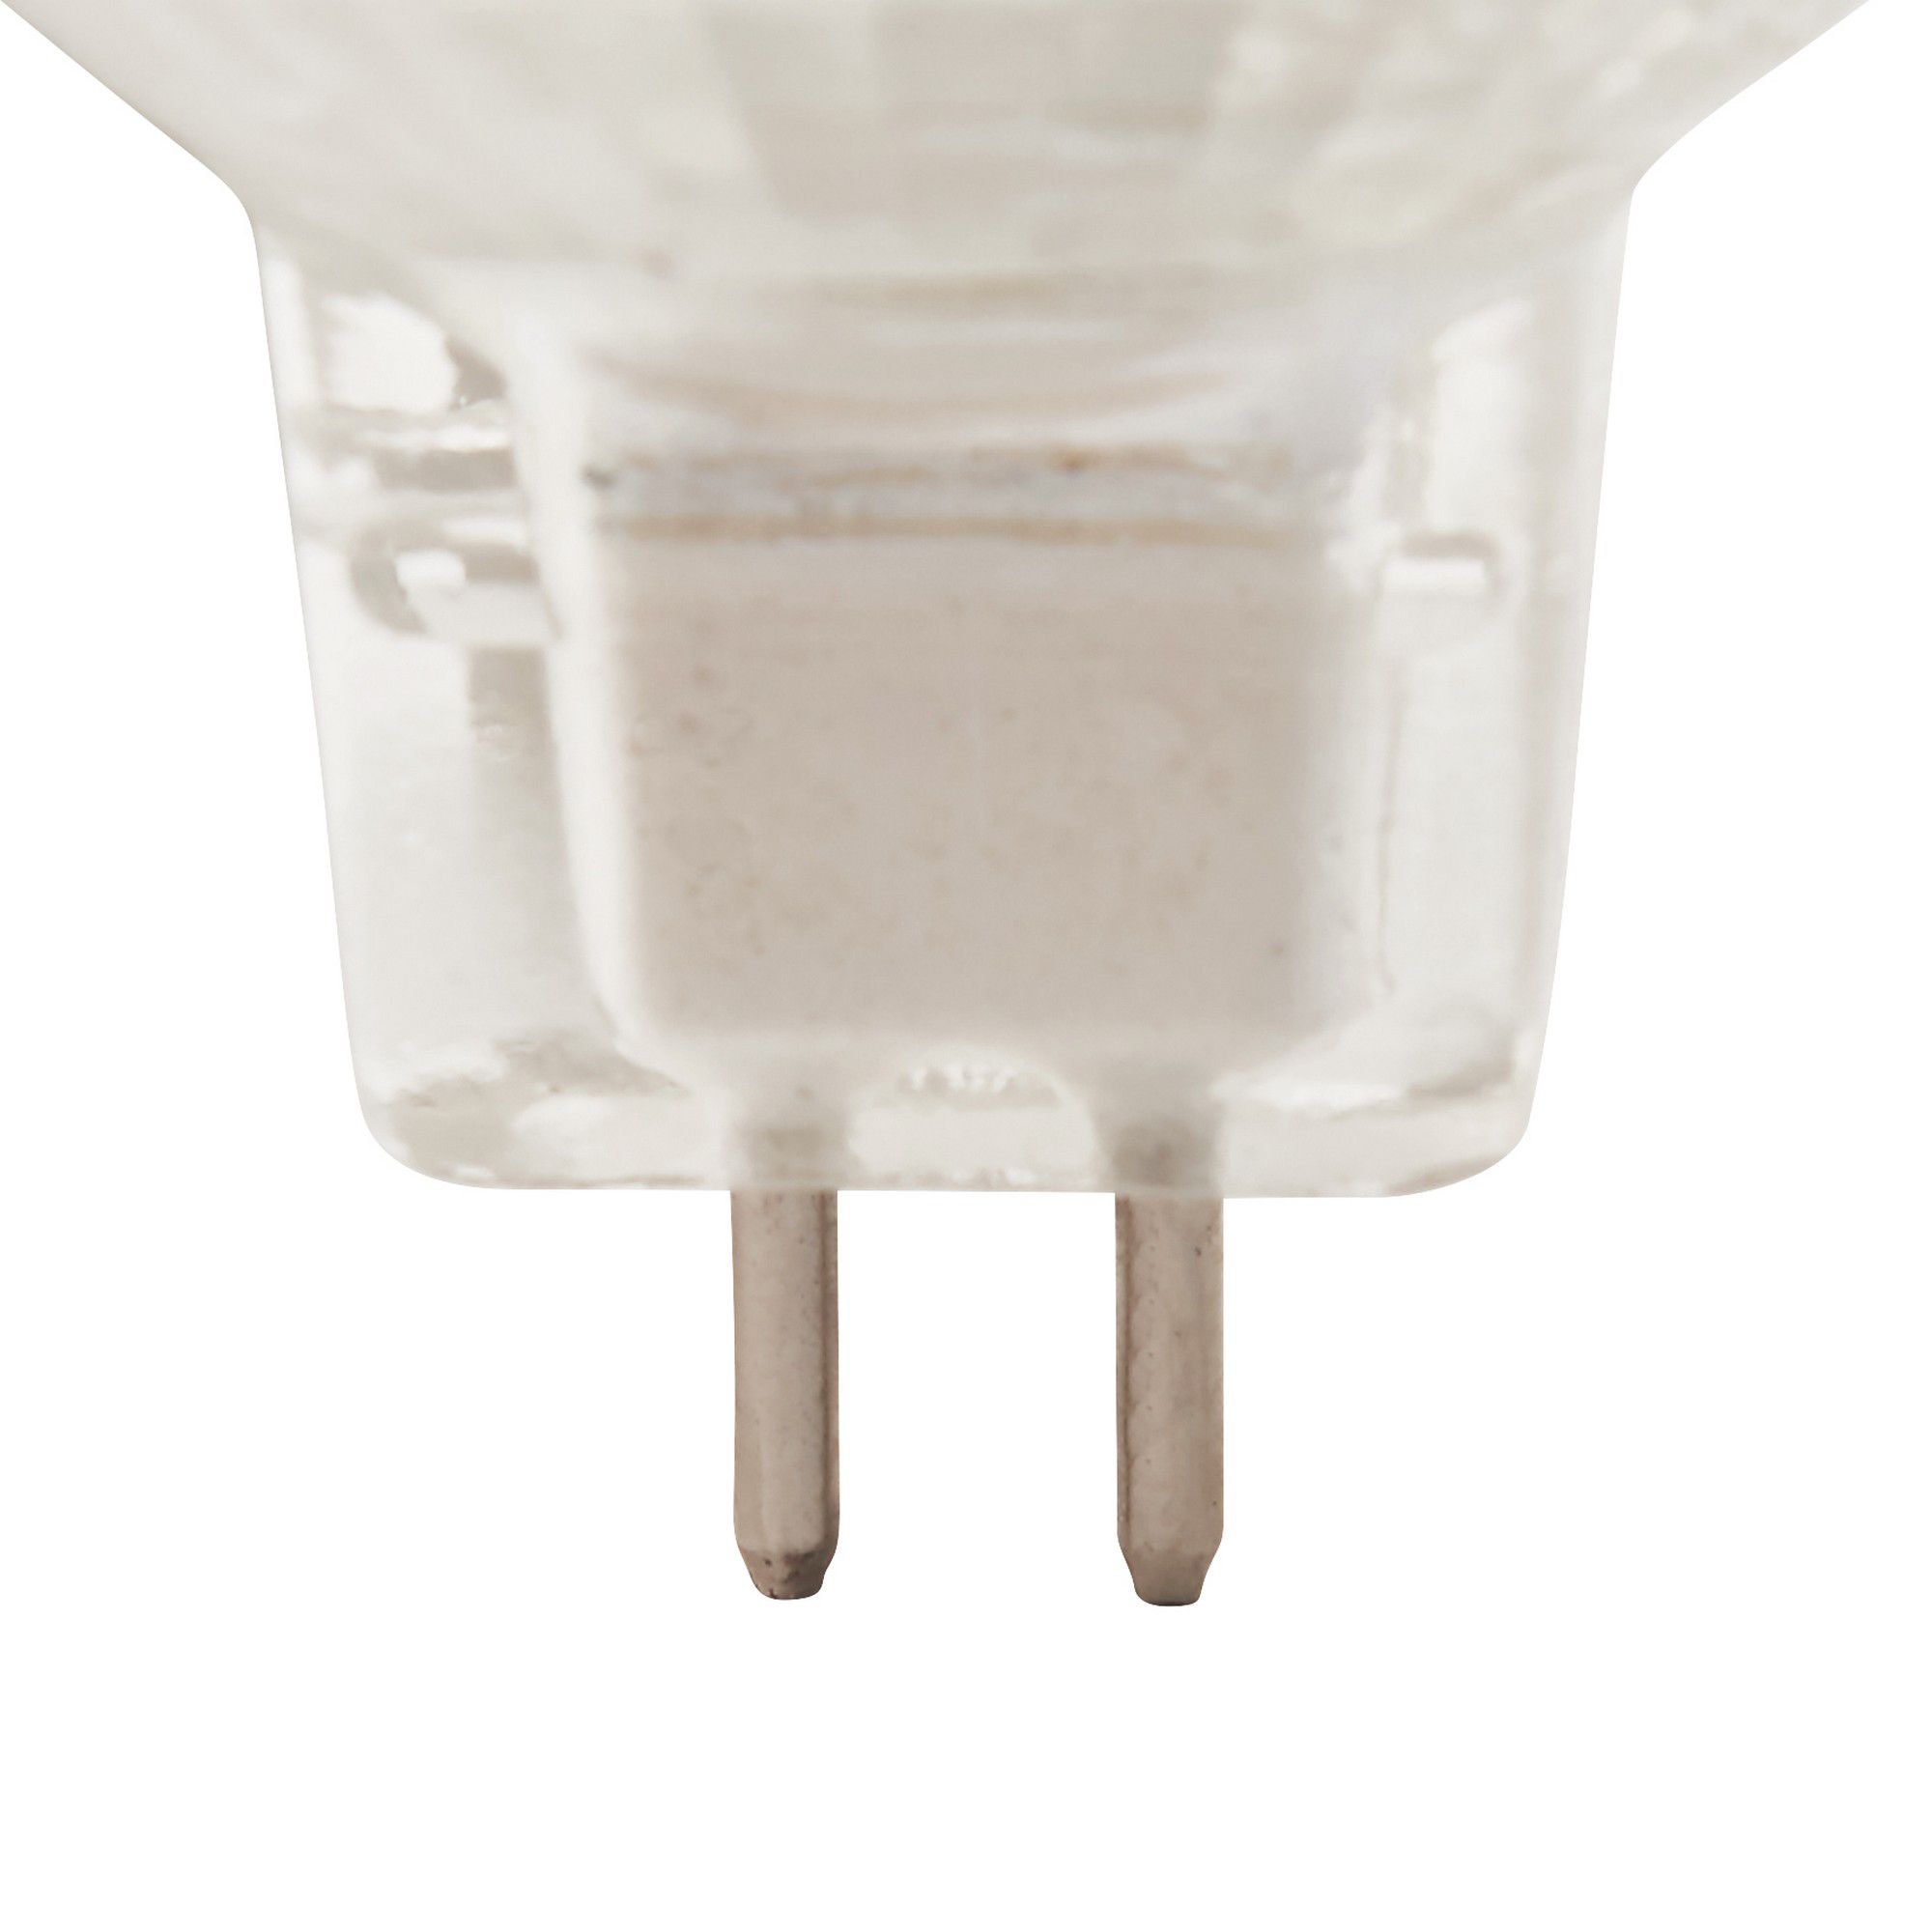 Diall 3.4W Neutral white LED Utility Light bulb, Pack of 3